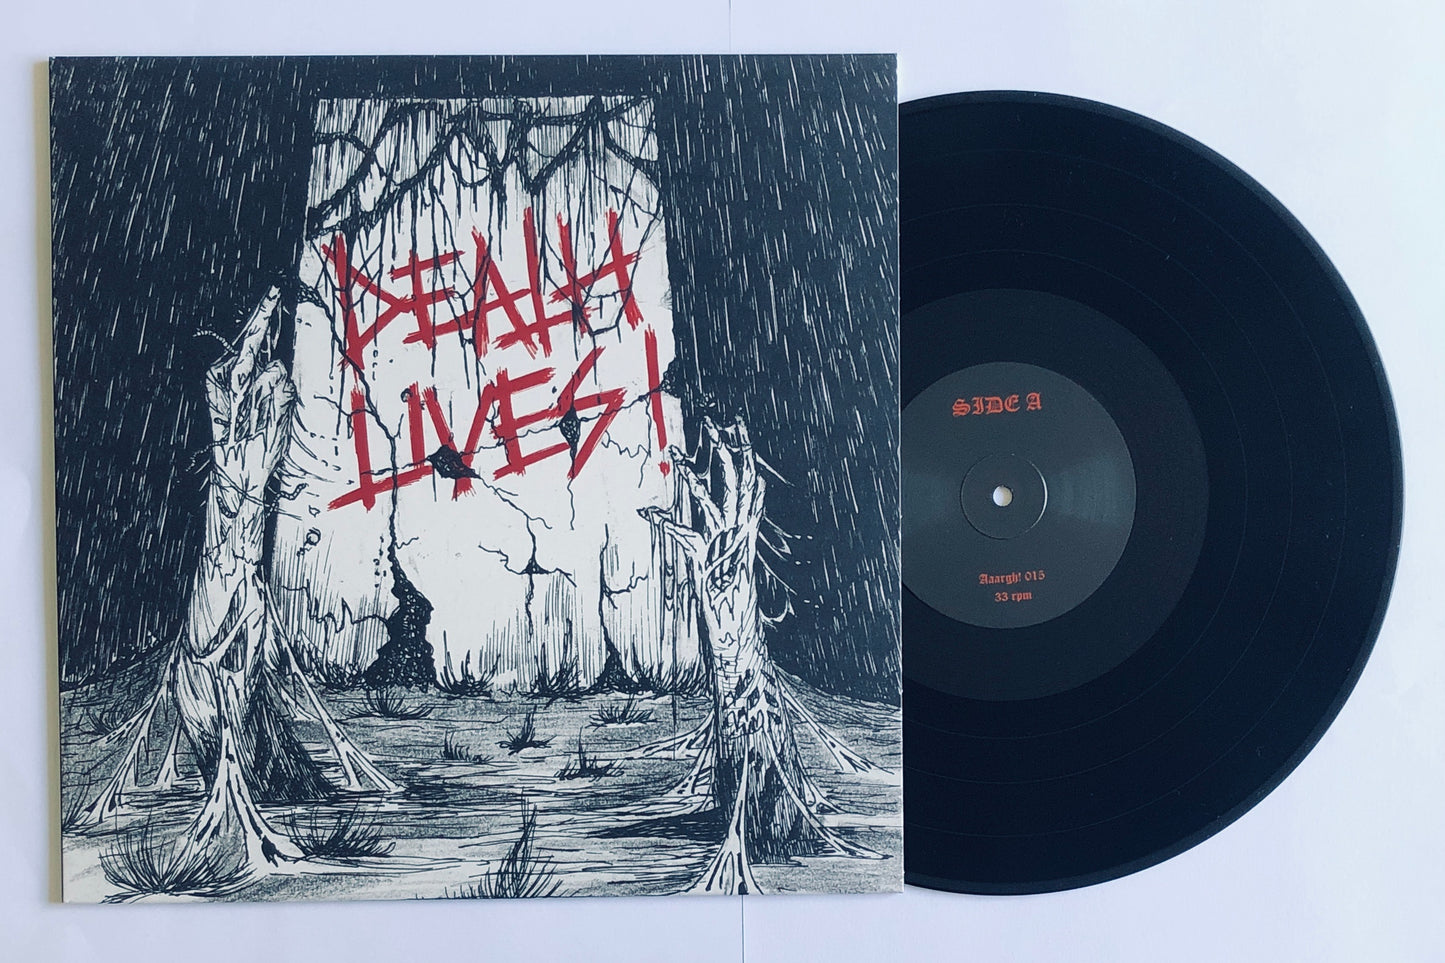 V/A "Death Lives" - 12" LP